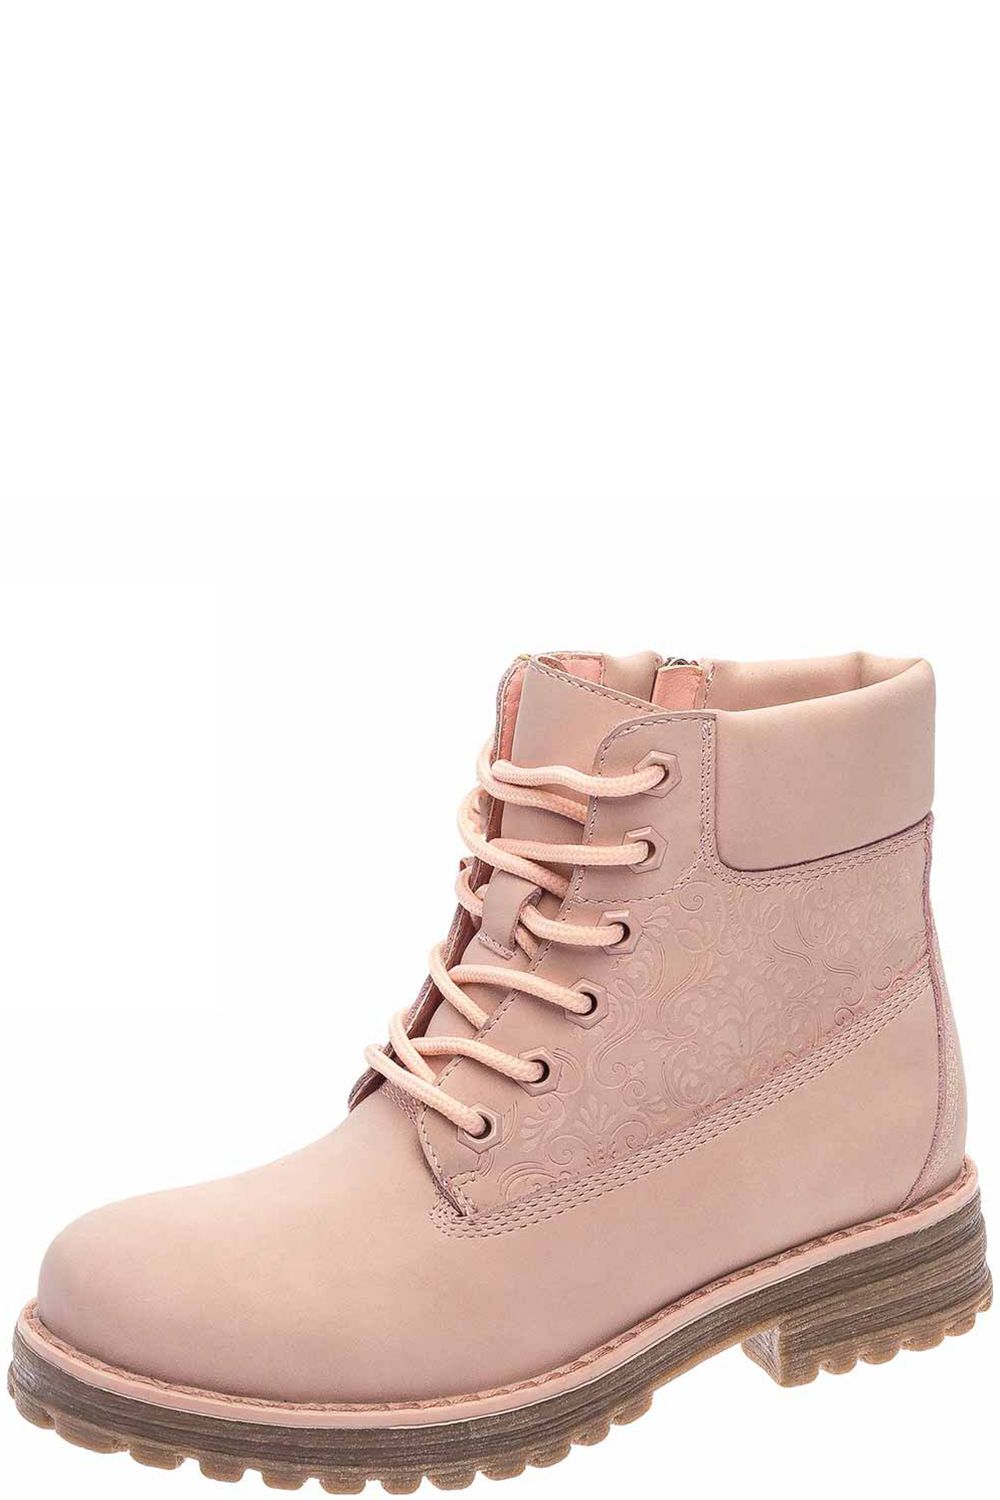 Ботинки Keddo, размер 33, цвет розовый 598127/05-01 - фото 1